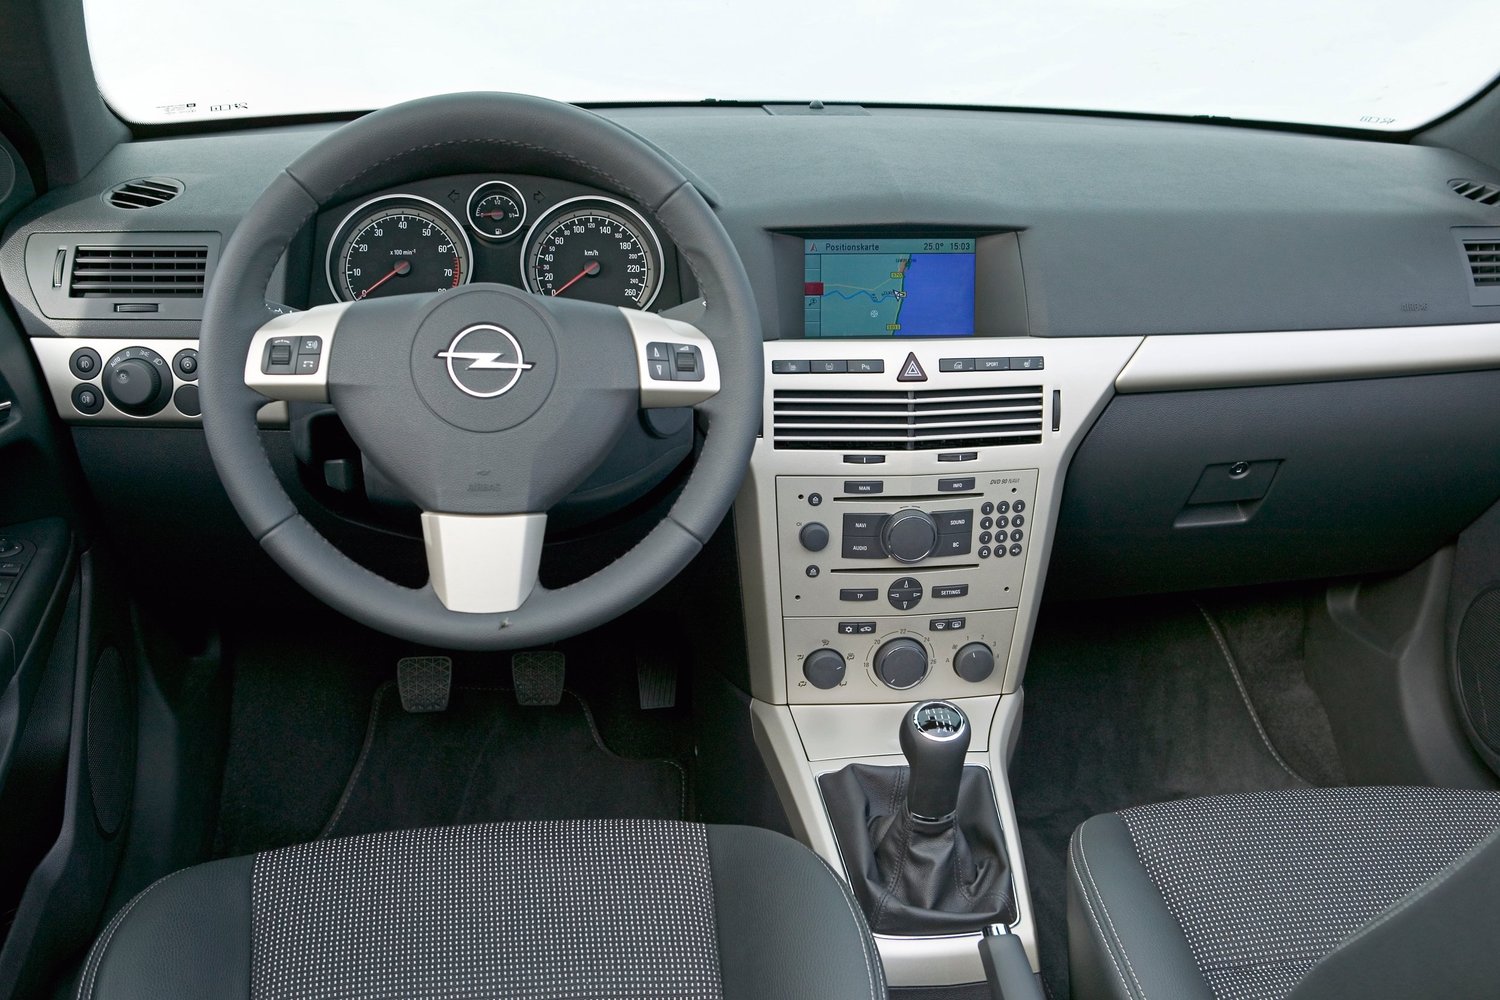 кабриолет Opel Astra 2006 - 2015г выпуска модификация 1.6 MT (115 л.с.)